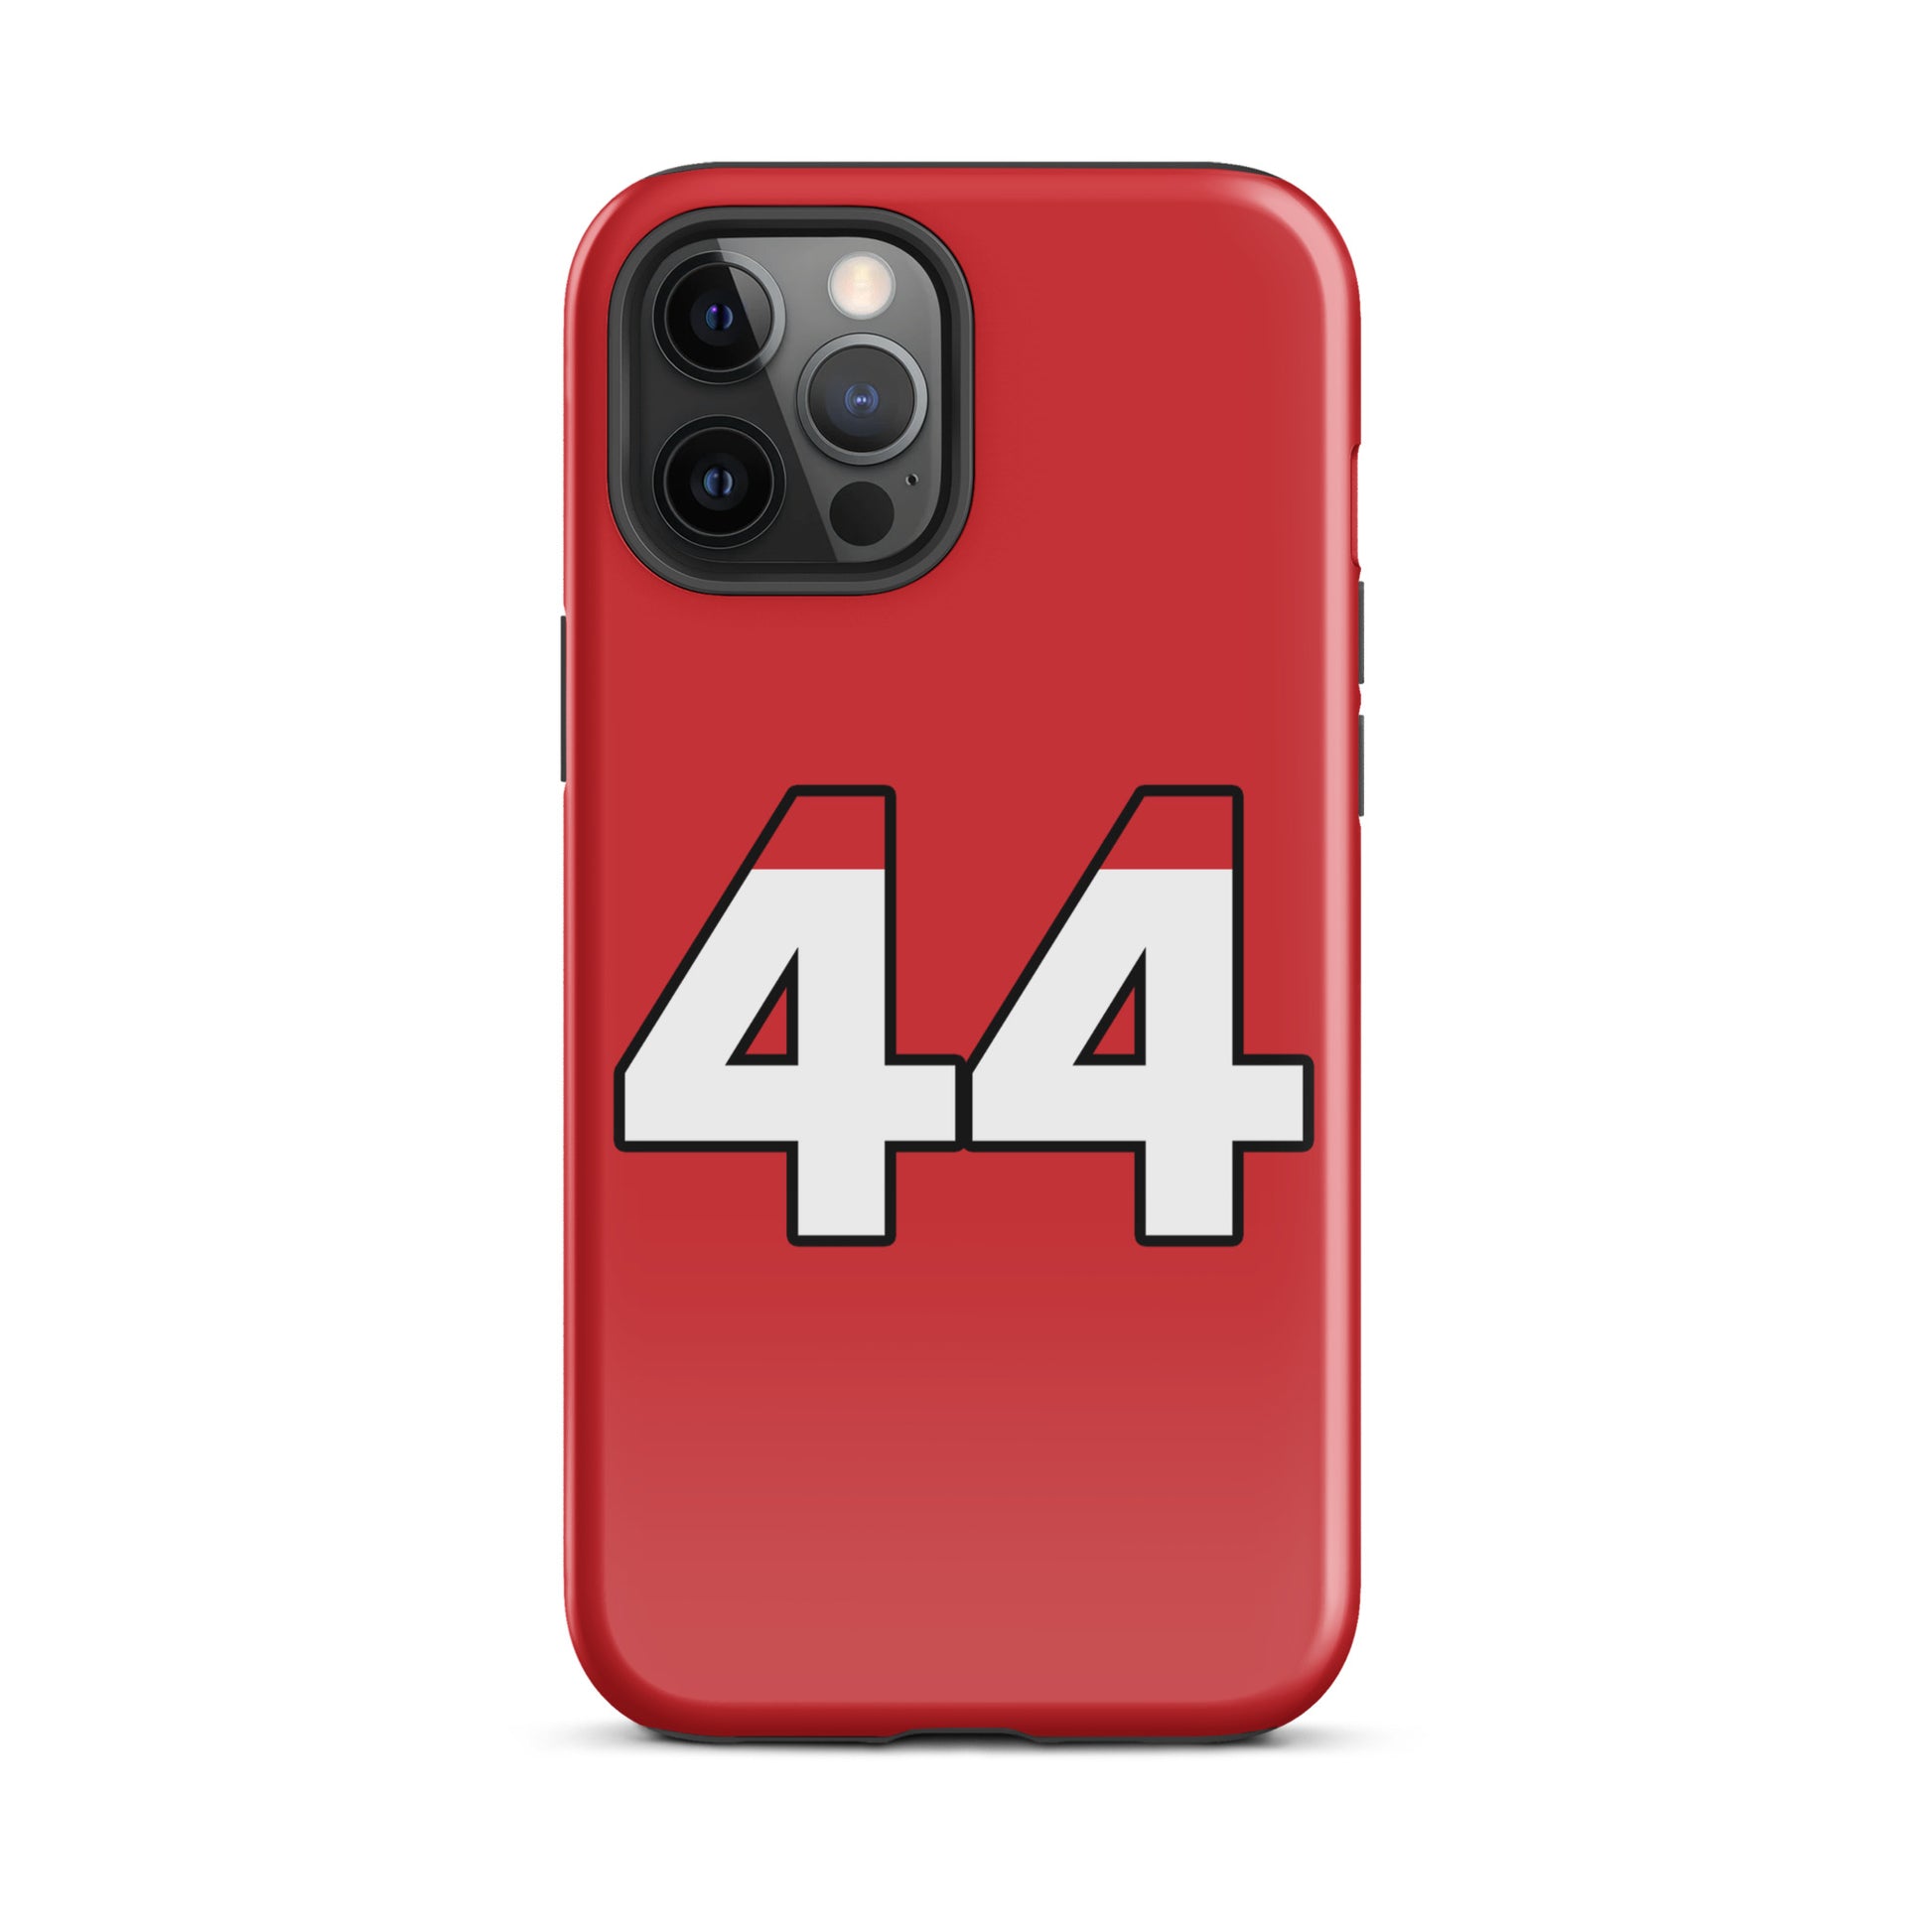 Lewis Hamilton Tough Ferrari iPhone 12 pro max case